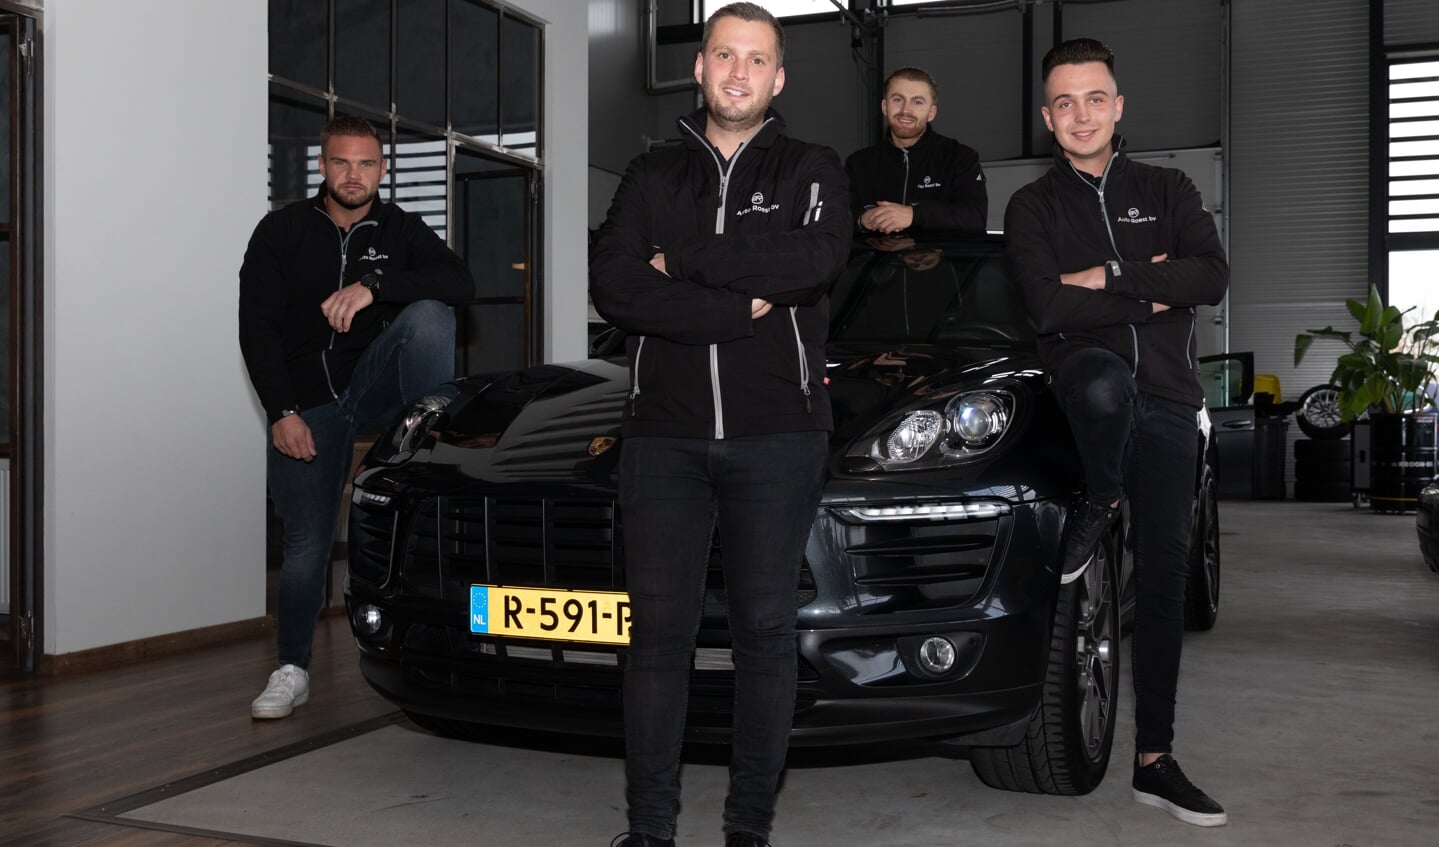 Het Auto Roest verkoopteam met van links naar rechts Bartek Waanders, Sander Weijenhoven, Robin Need en Jimmy Rijke.